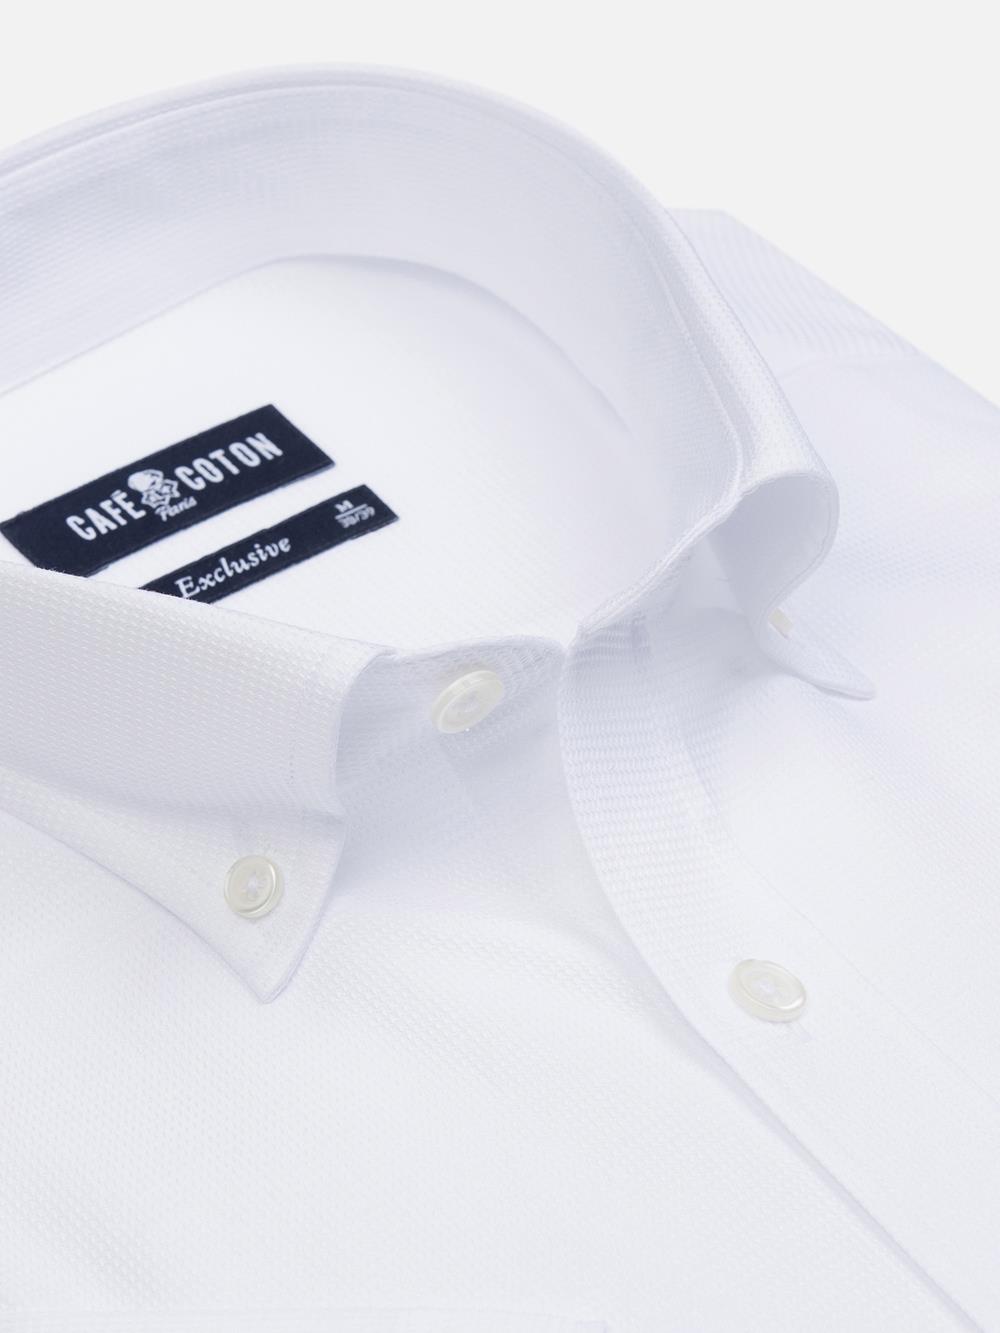 Camisa de manga corta Tea blanco texturizada - Cuello abotonado